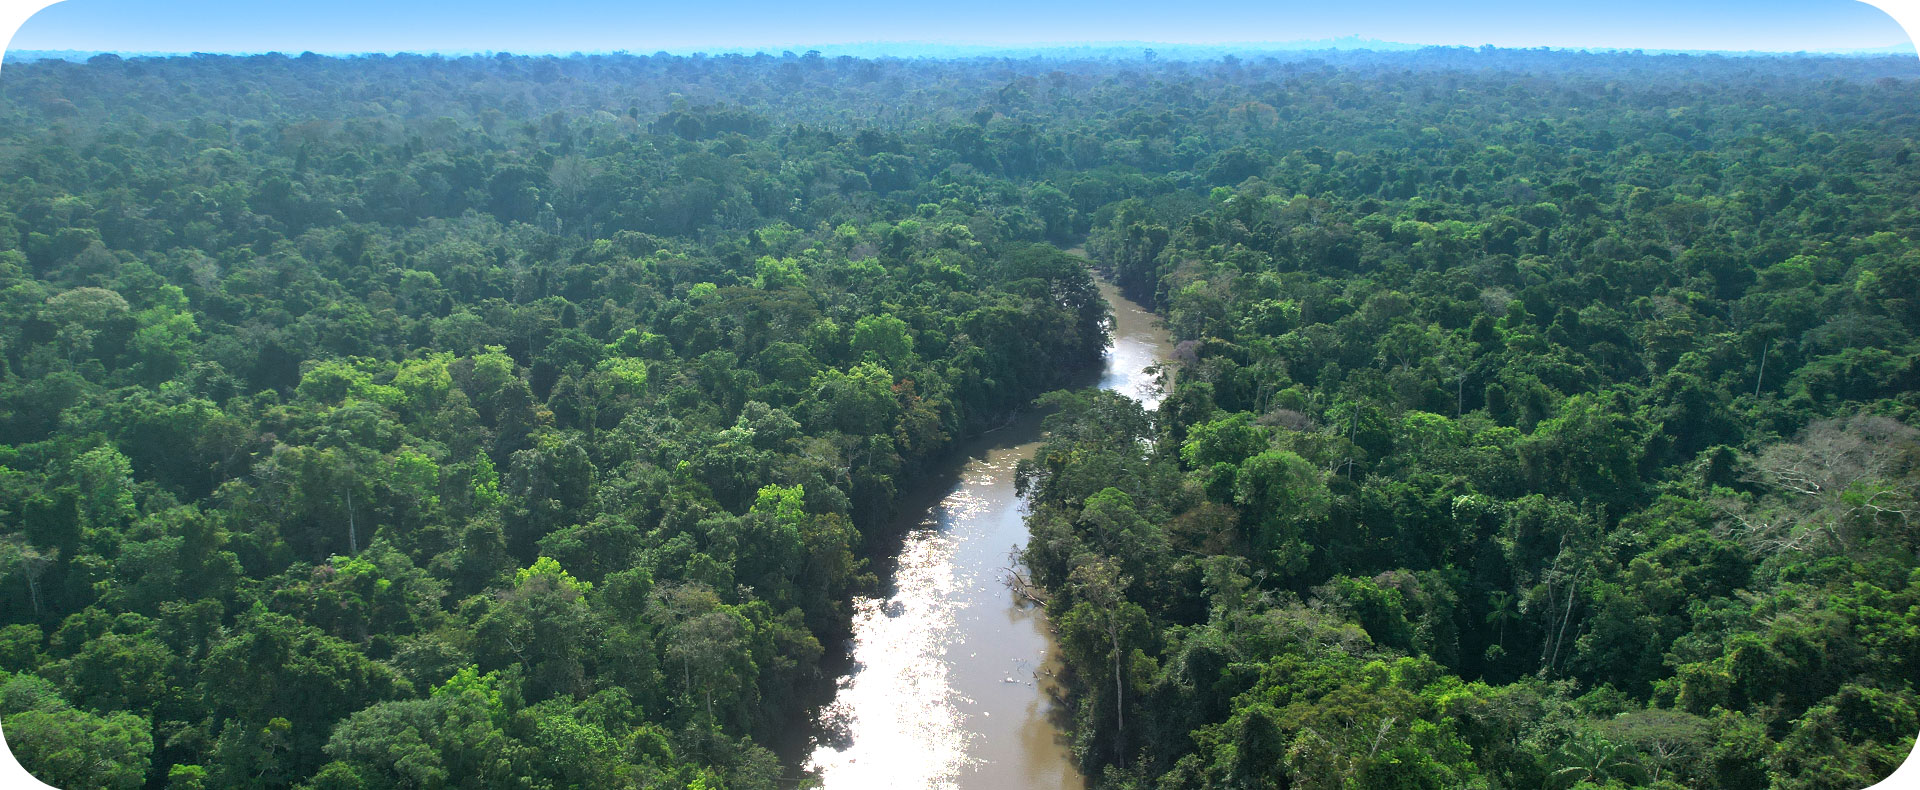 Floresta conservada pertencente a área do Projeto REDD+ Manoa, referência mundial em manejo florestal sustentável.